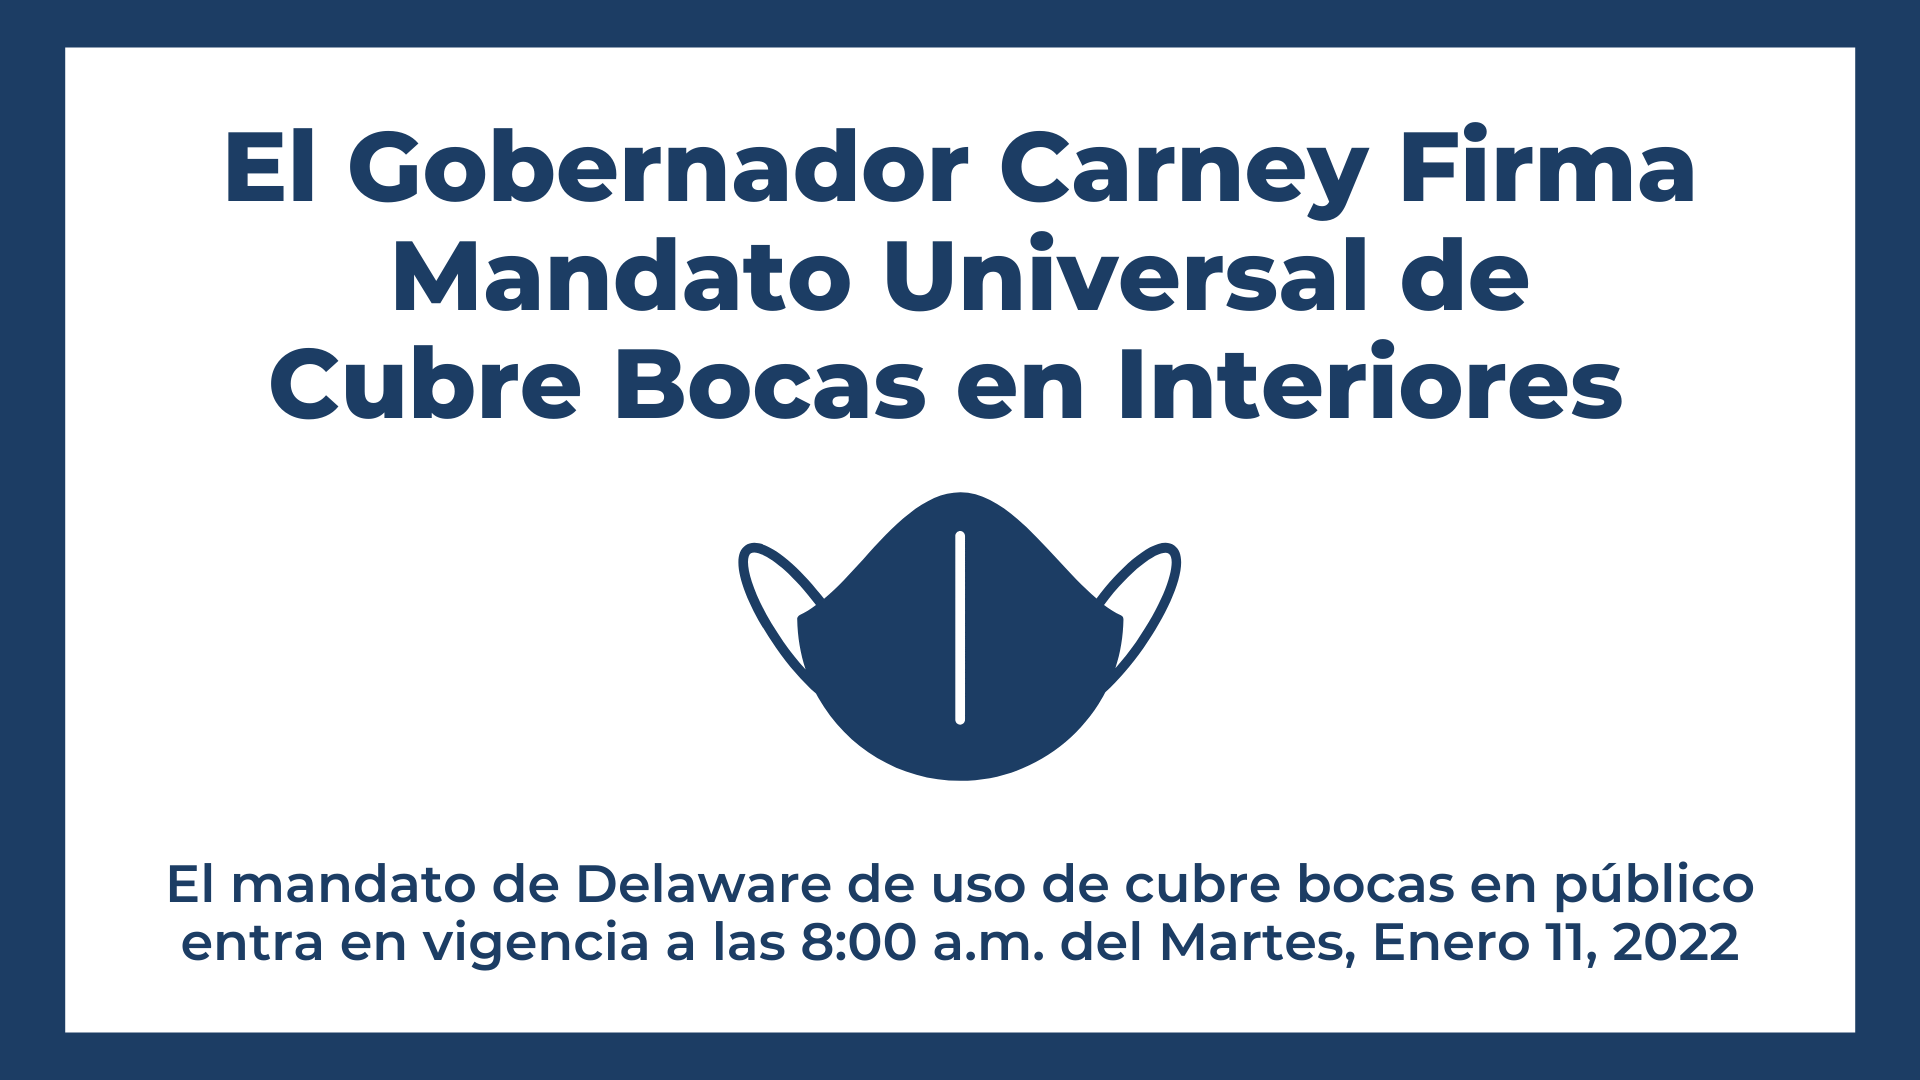 El Gobernador Carney Firma Mandato Universal de Cubre Bocas en Interiores. El mandato de Delaware de uso de cubre bocas en público entra en vigencia a las 8:00 a.m. del Martes, Enero 11, 2022.